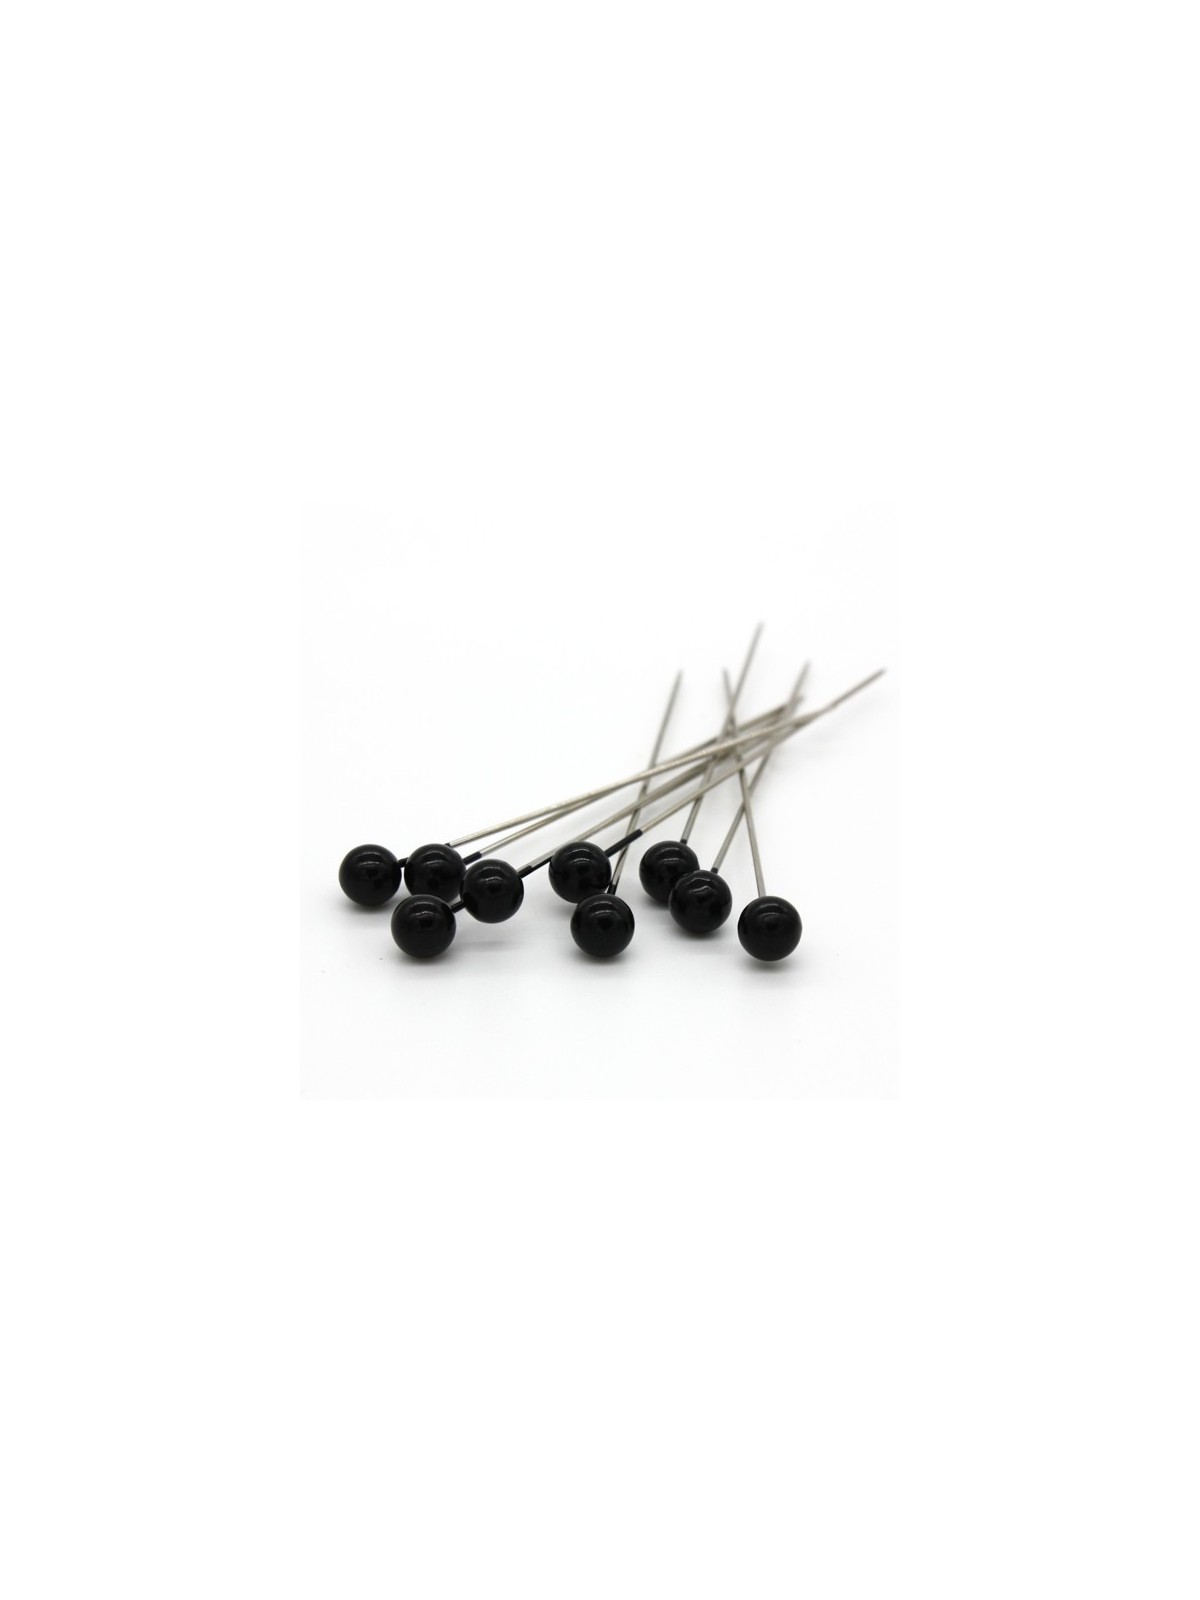 Dekorative pins - schwarz Perle - 65mm/9stück